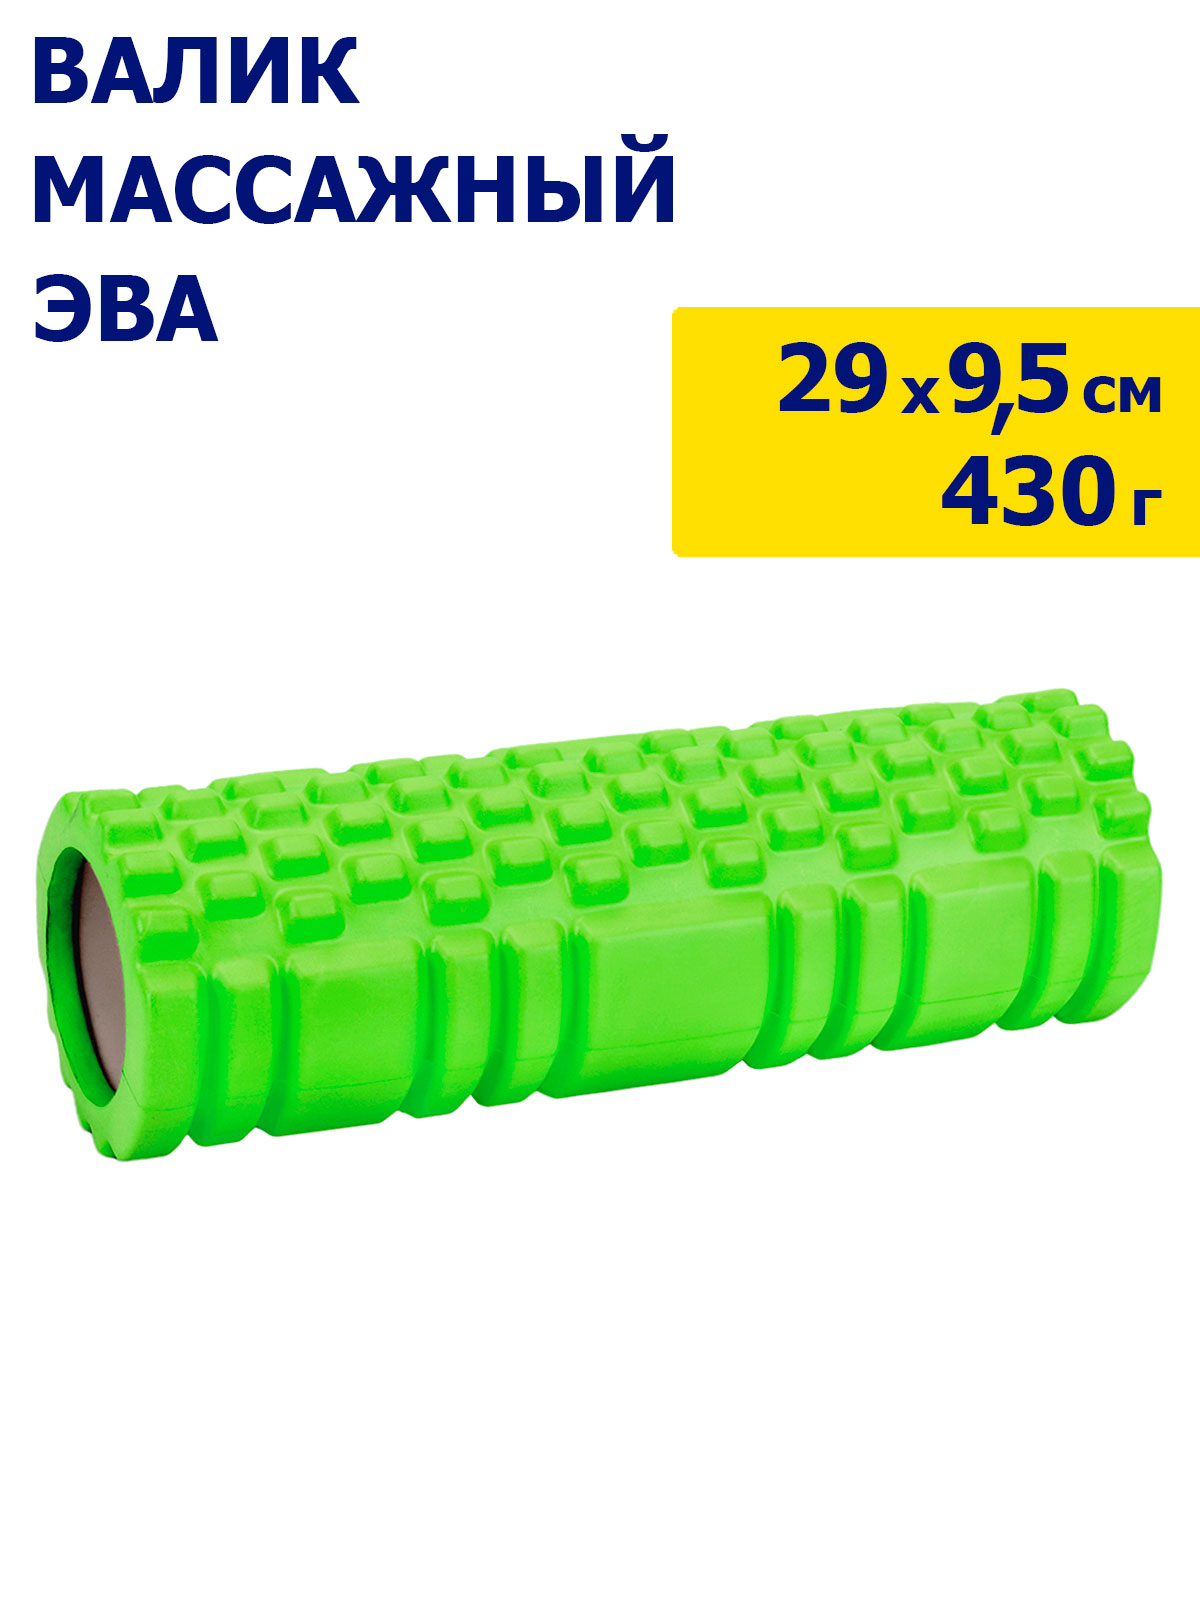 Валик для йоги, массажный, для растяжки, для расслабления мышц, ЭВА, зеленый, JB4300082